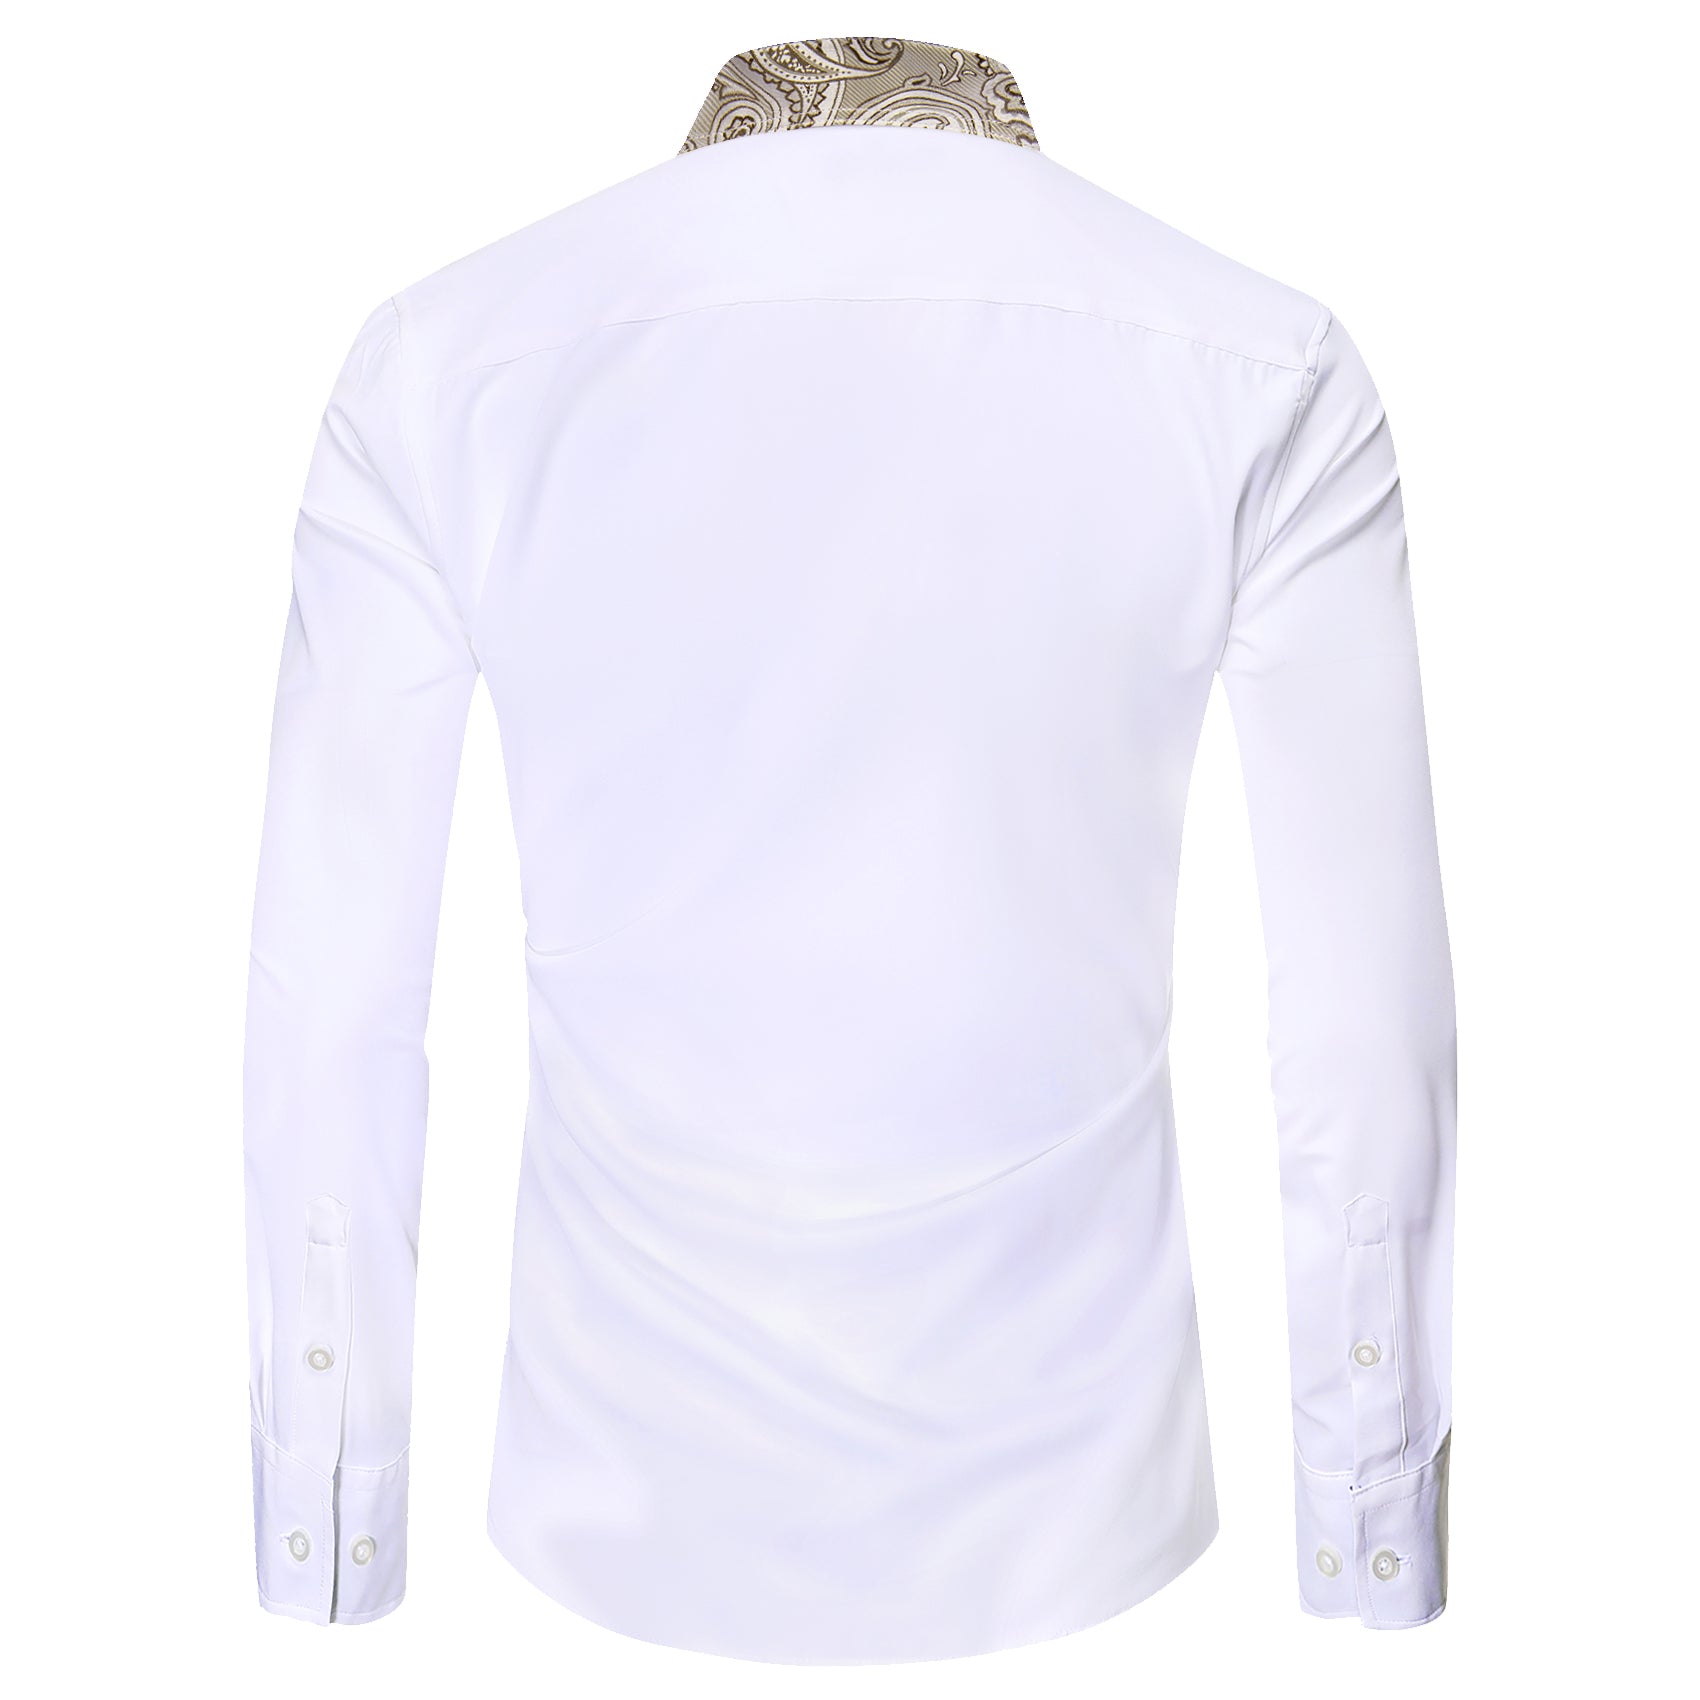 Barry.wang White Linen Splicing Men's Business Shirt